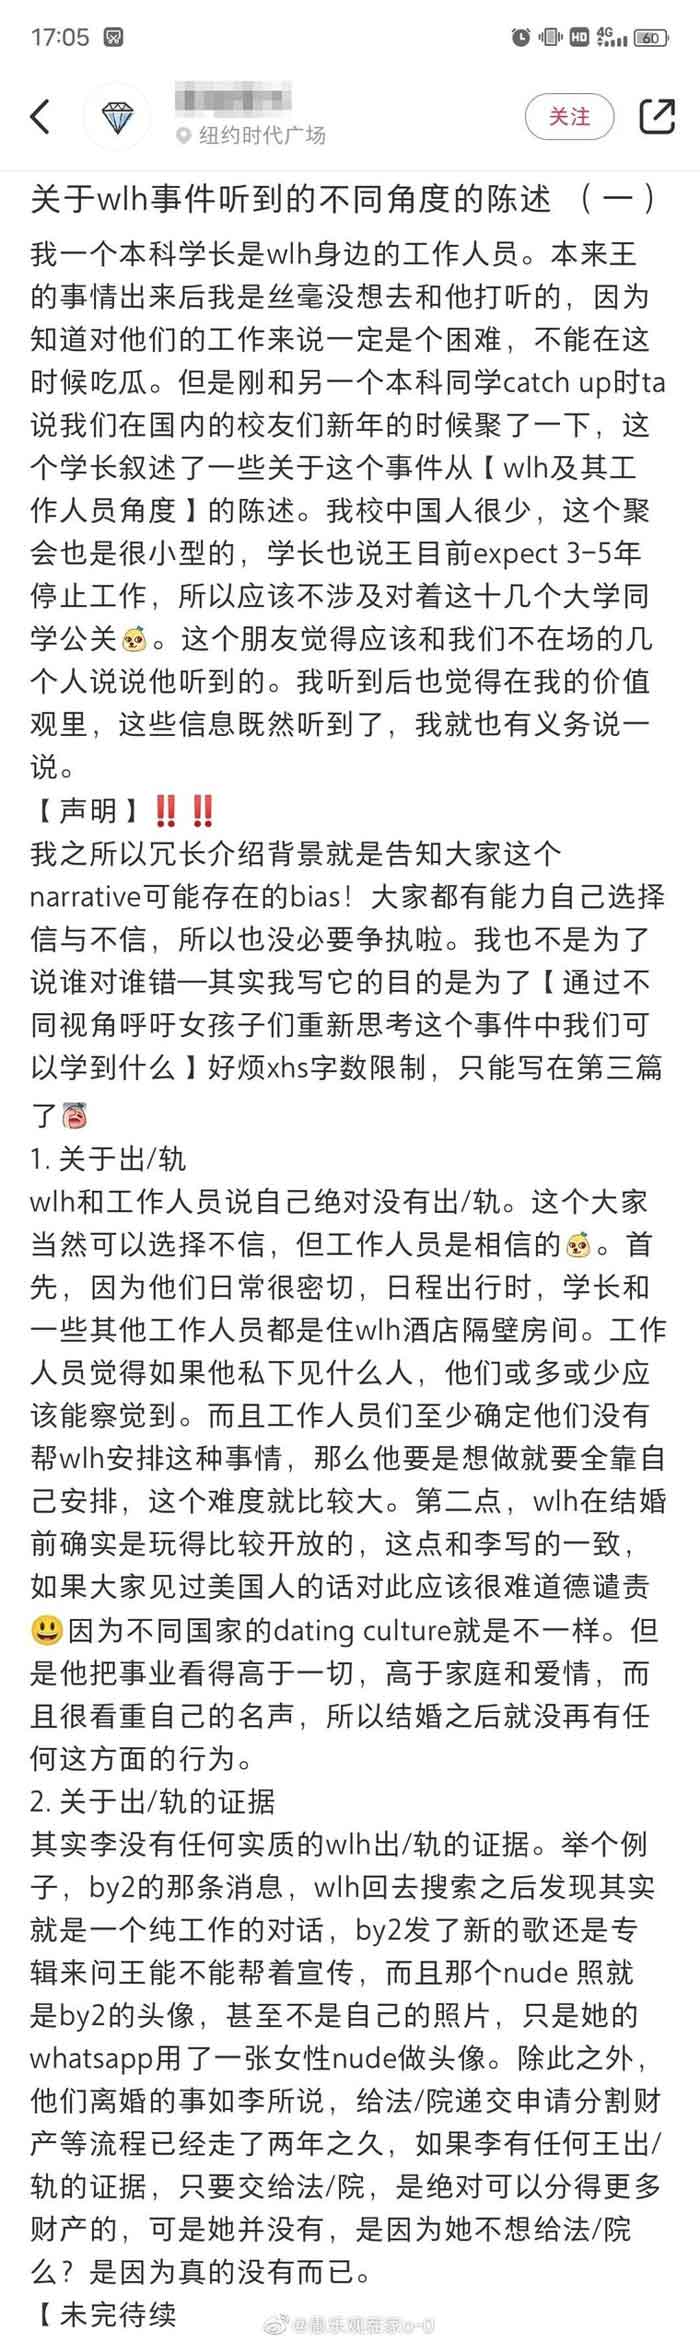 网友爆料王力宏离婚内幕。